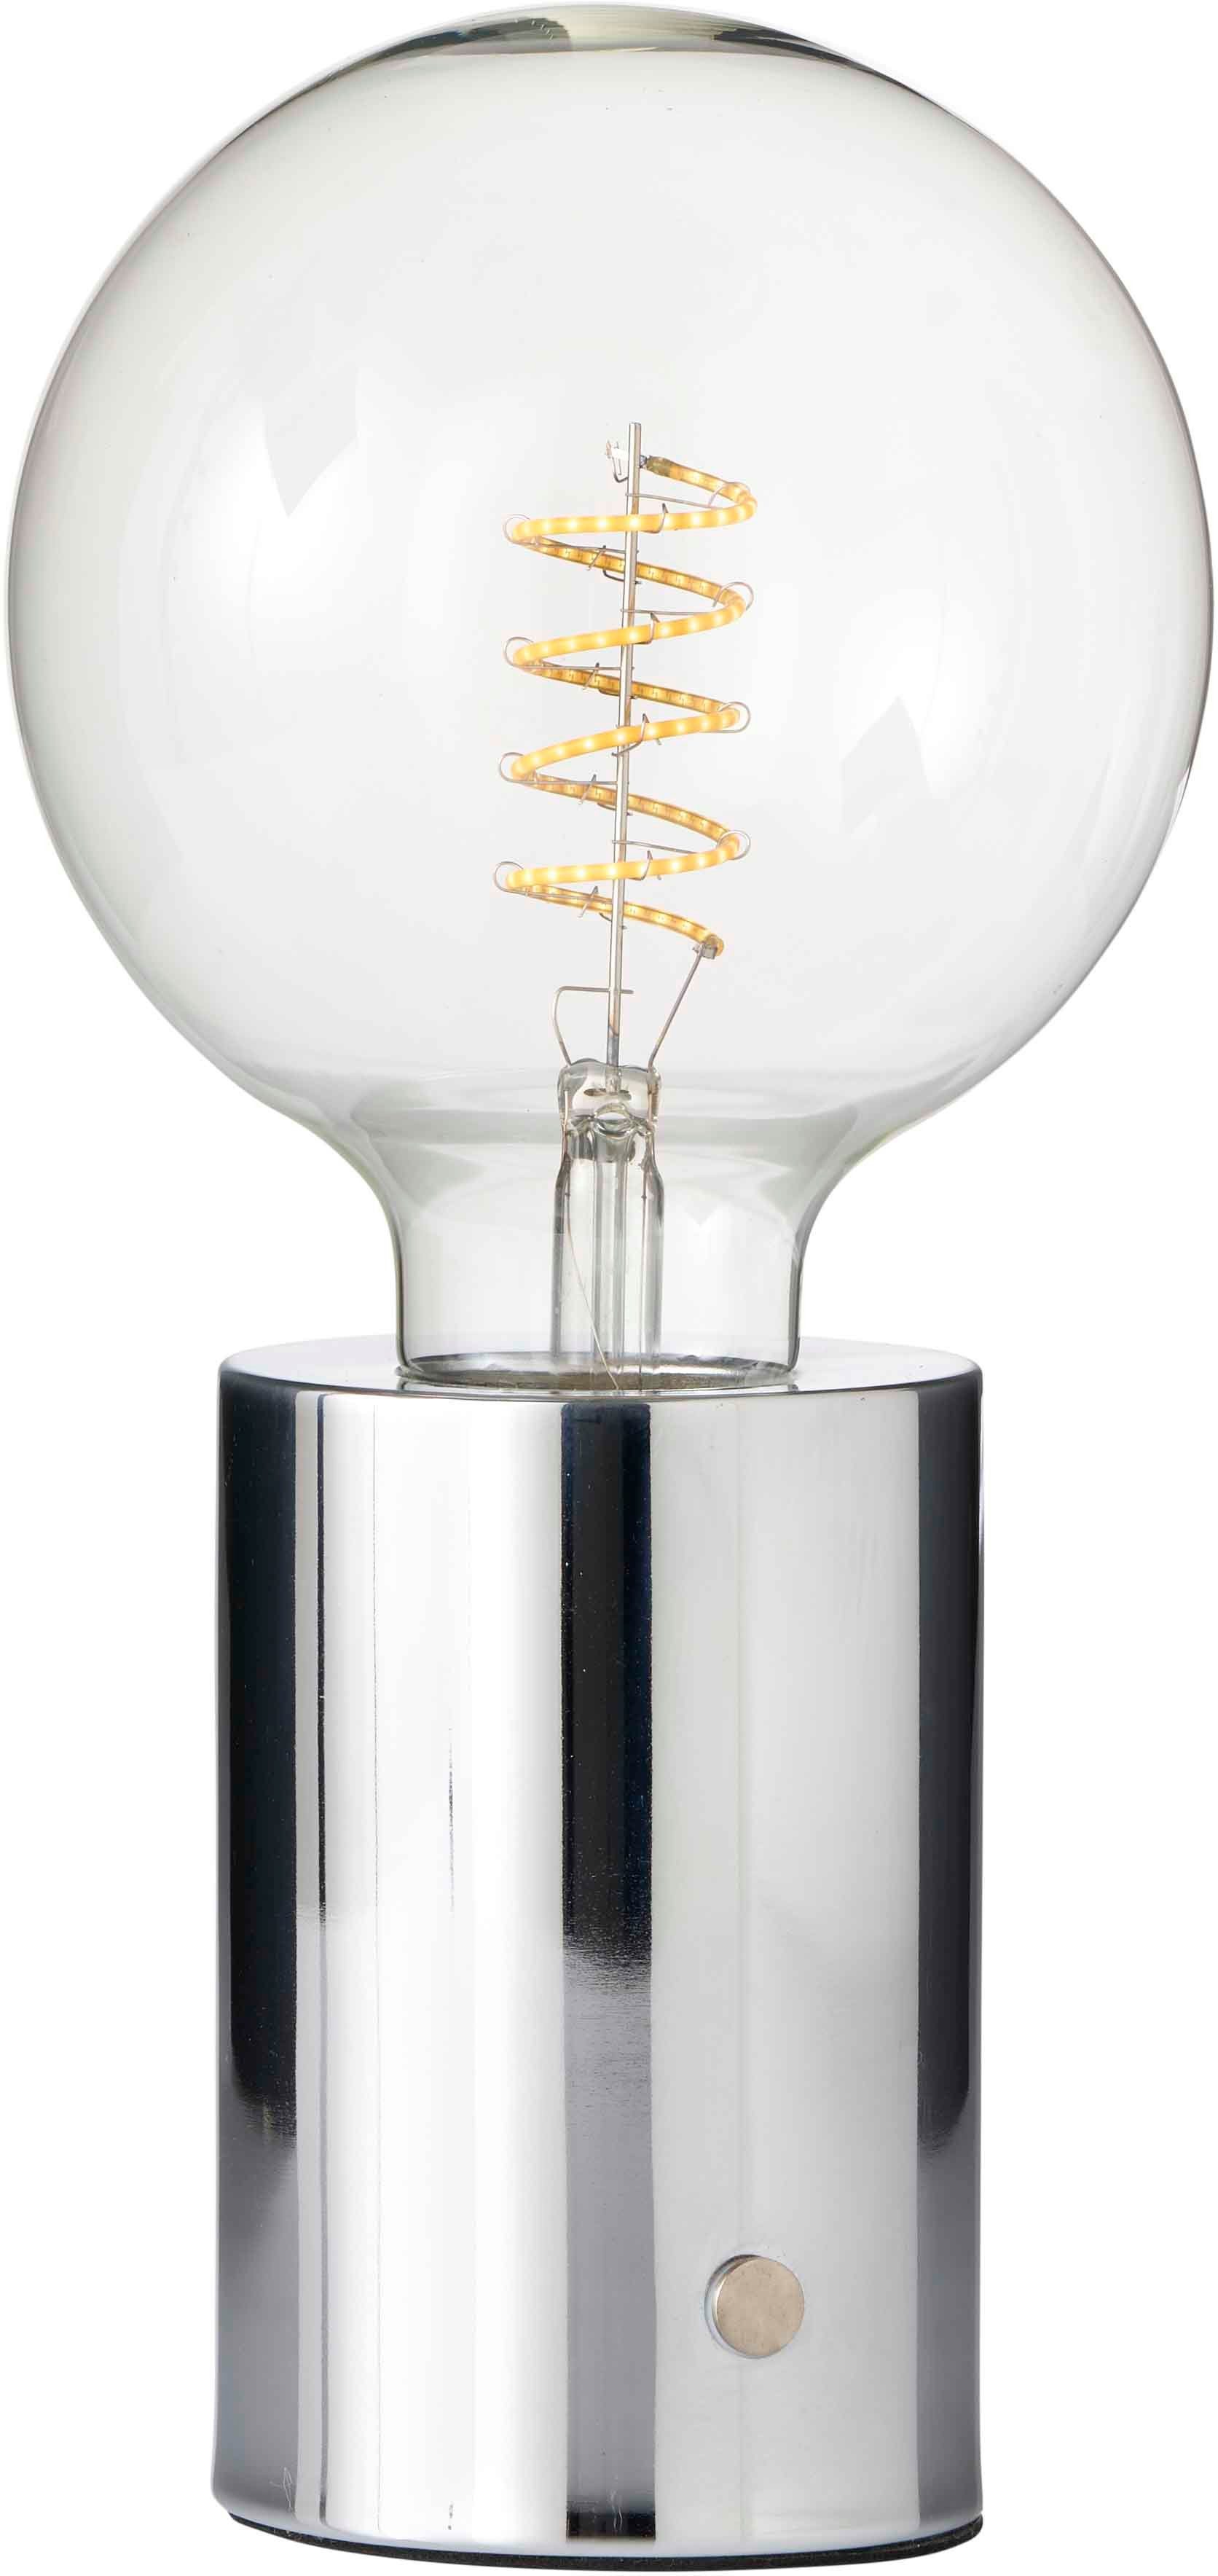 Northpoint Nachttischlampe LED Akku Tischlampe Tischleuchte Edison Glühbirne mit Glühdraht Chrom klare Birne